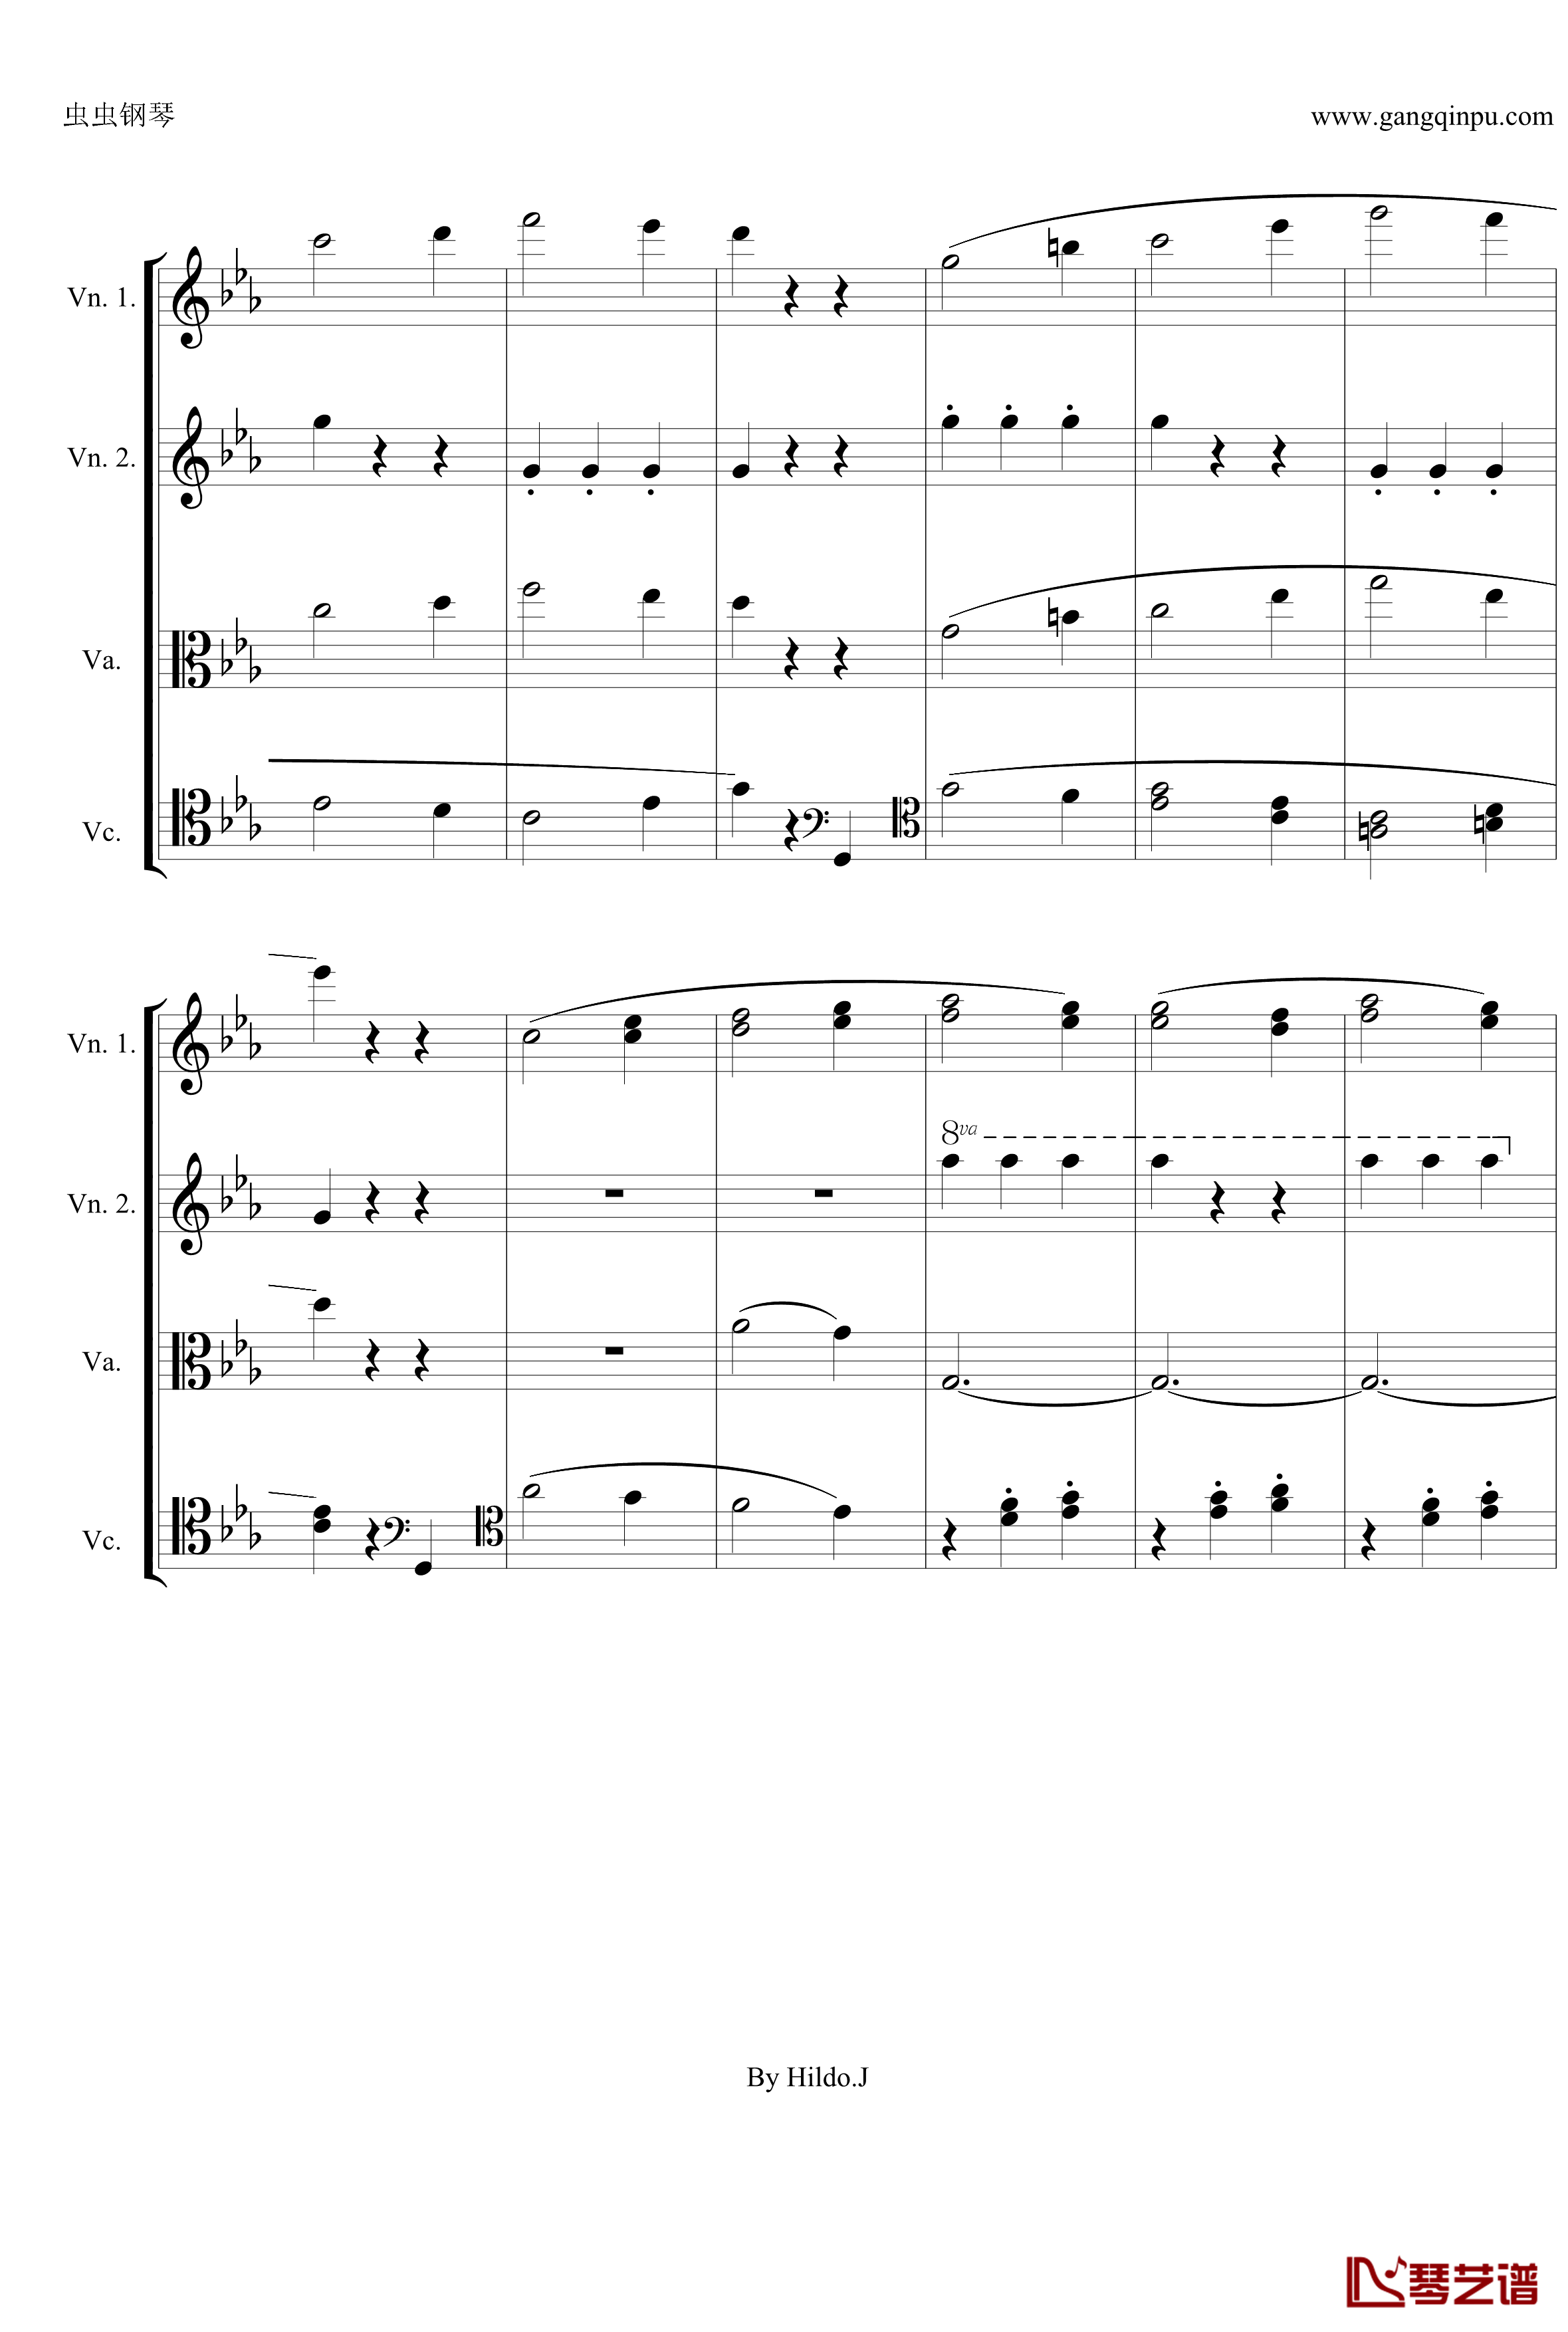 命运交响曲第三乐章钢琴谱-弦乐版-贝多芬-beethoven8